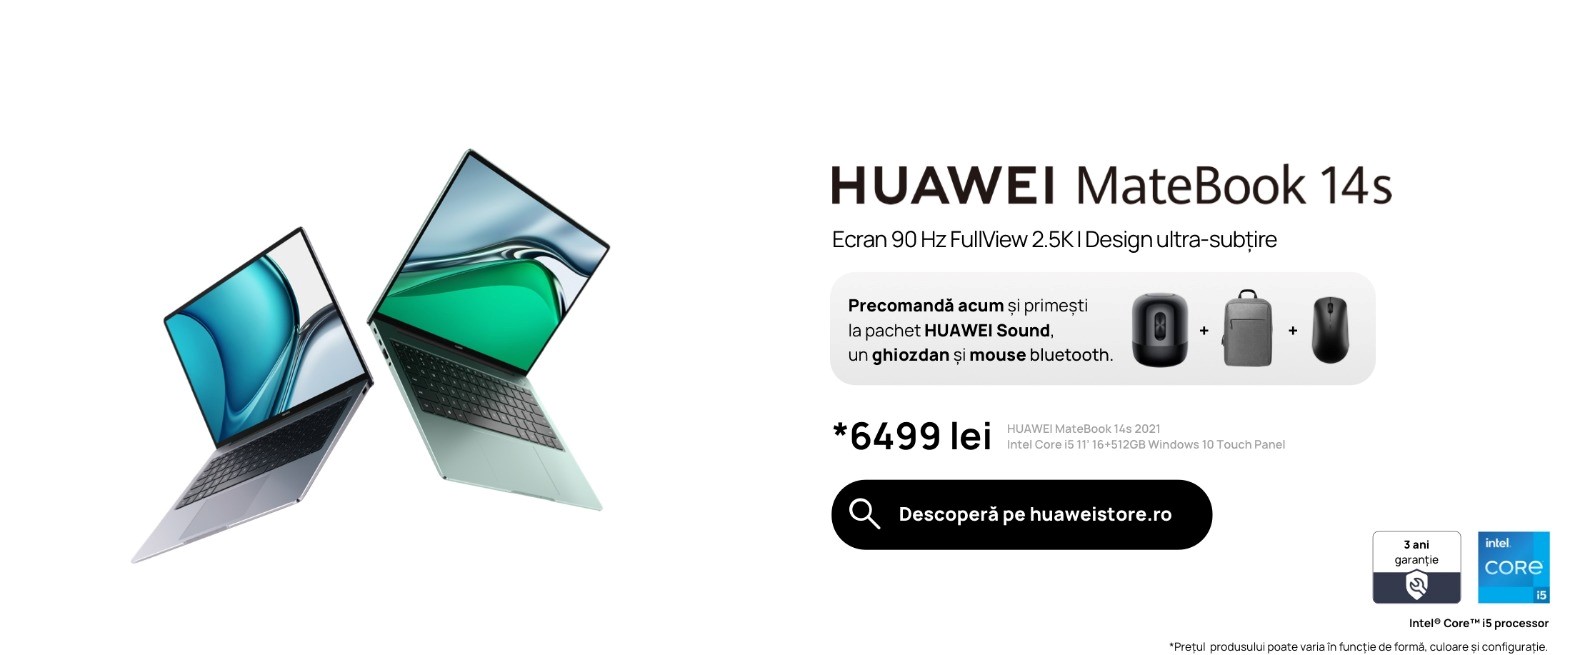 Noul HUAWEI MateBook 14s este disponibil în magazine în același pachet avantajos